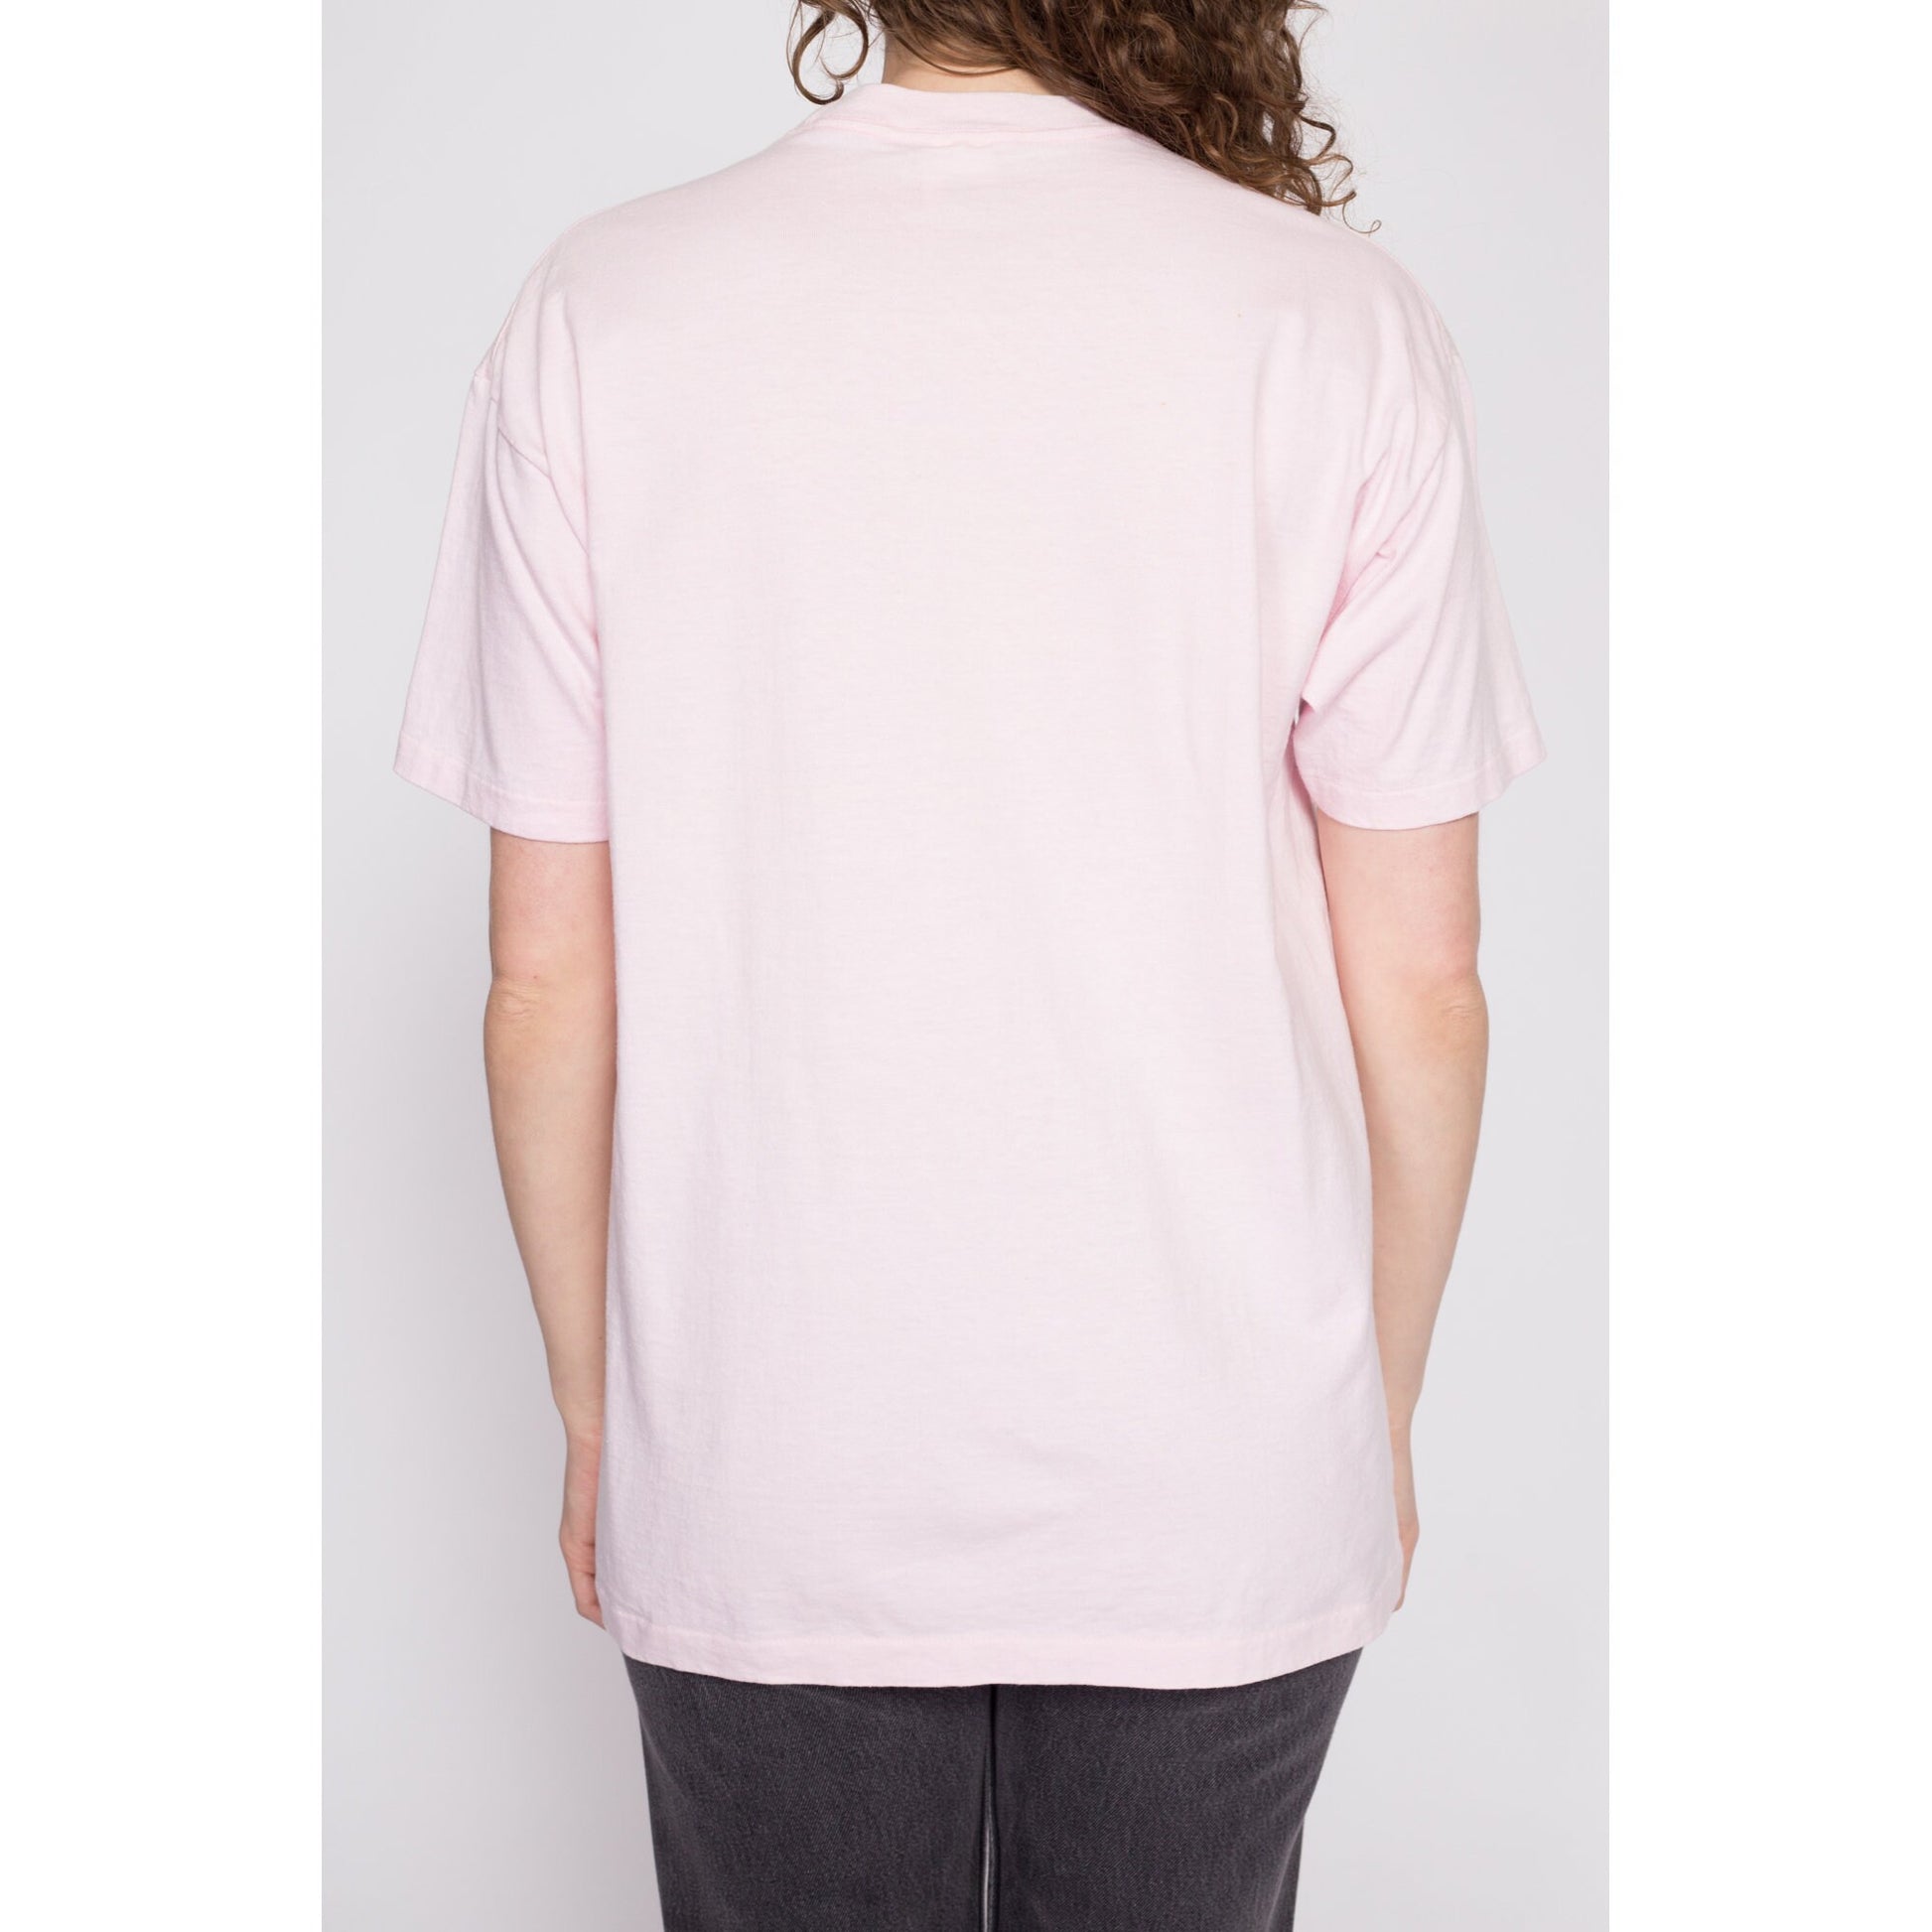 90s Pink Flamingo T Shirt - Men's Medium, Women's Large | Vintage Habitat Graphic Animal Tee